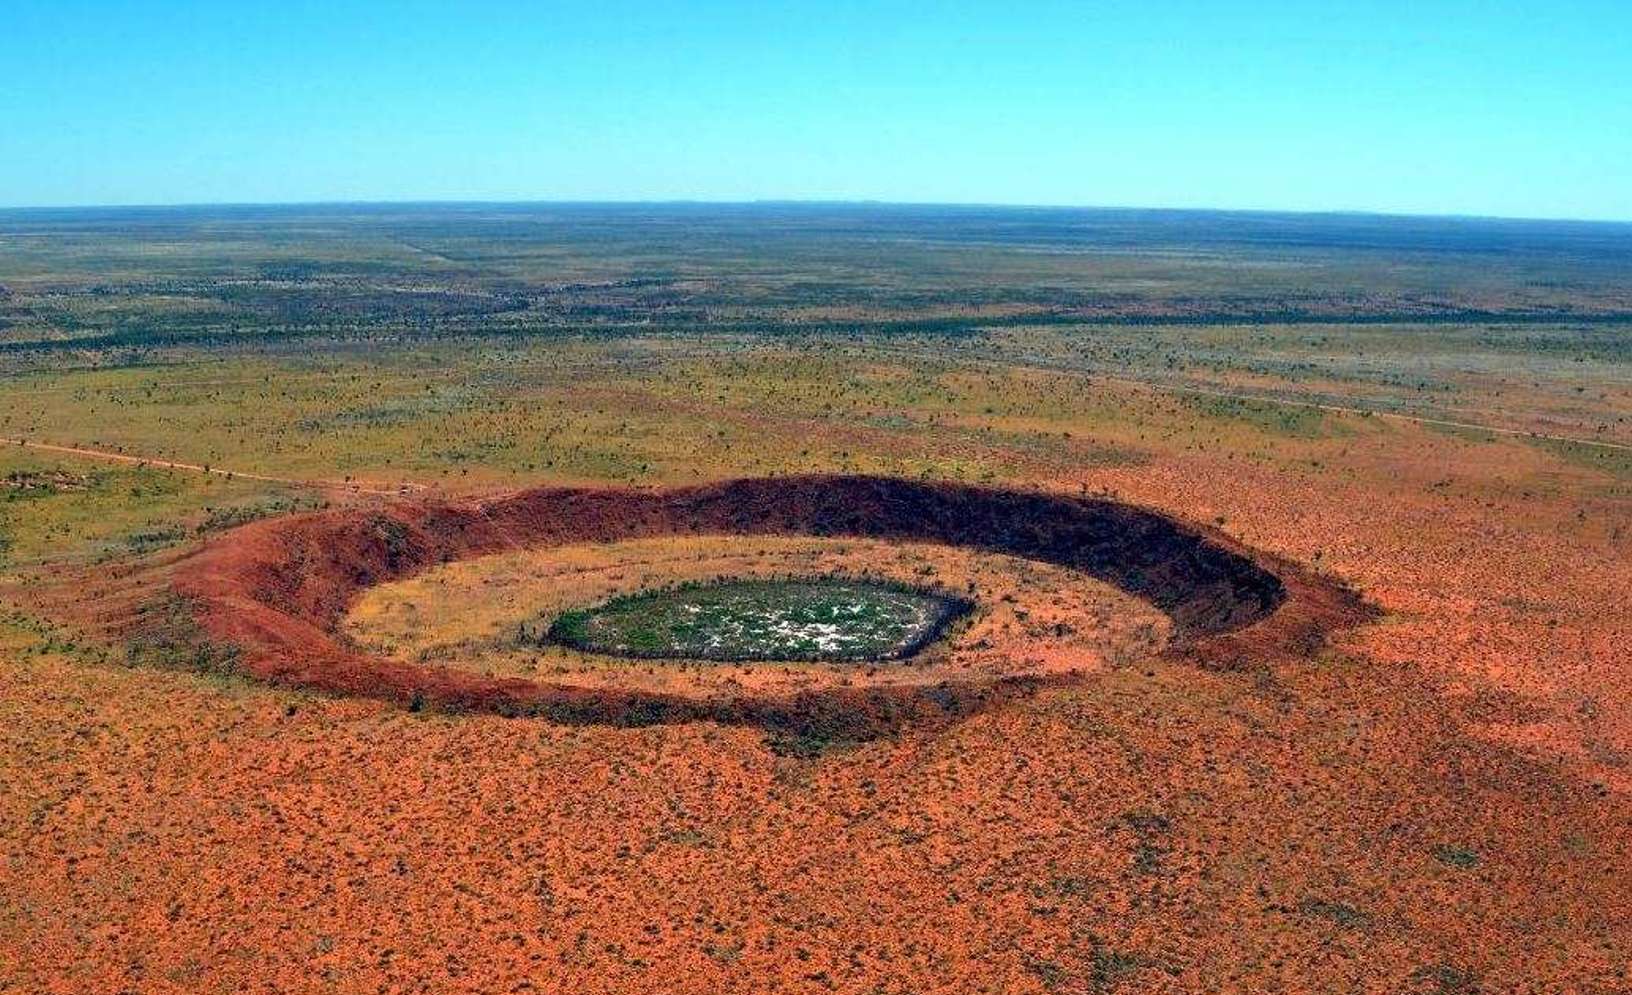 Le cratère de Wolfe Creek est un cratère météoritique situé dans l'État d’Australie-Occidentale. Il mesure 875 mètres de diamètre et 60 mètres de profondeur. L’impact serait survenu il y a moins de 300.000 ans au Pléistocène et c'est pourquoi il est facilement identifiable. Ce n'est pas le cas du double cratère d'impact supputé dans le bassin Warburton, en Australie-Méridionale, qui est quant à lui bien plus ancien. © Australia's North West